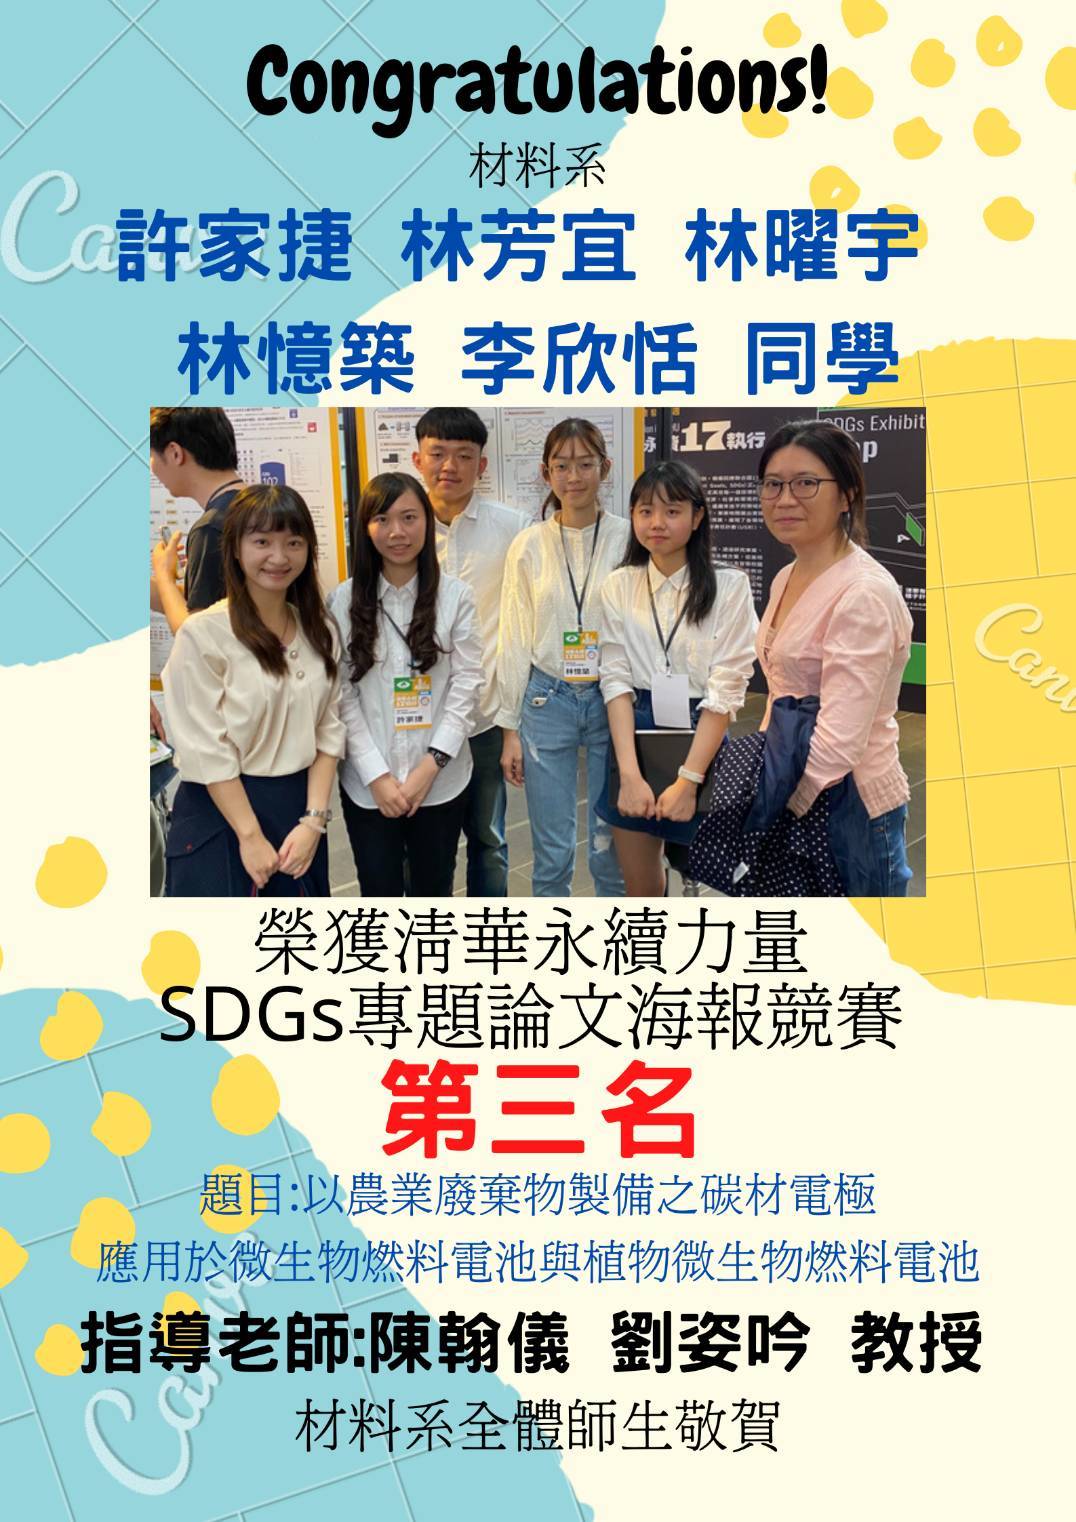 恭賀！許家捷、林芳宜、林曜與、林憶築、李欣恬同學榮獲清華永續力量SDGs專題論文海報競賽第三名